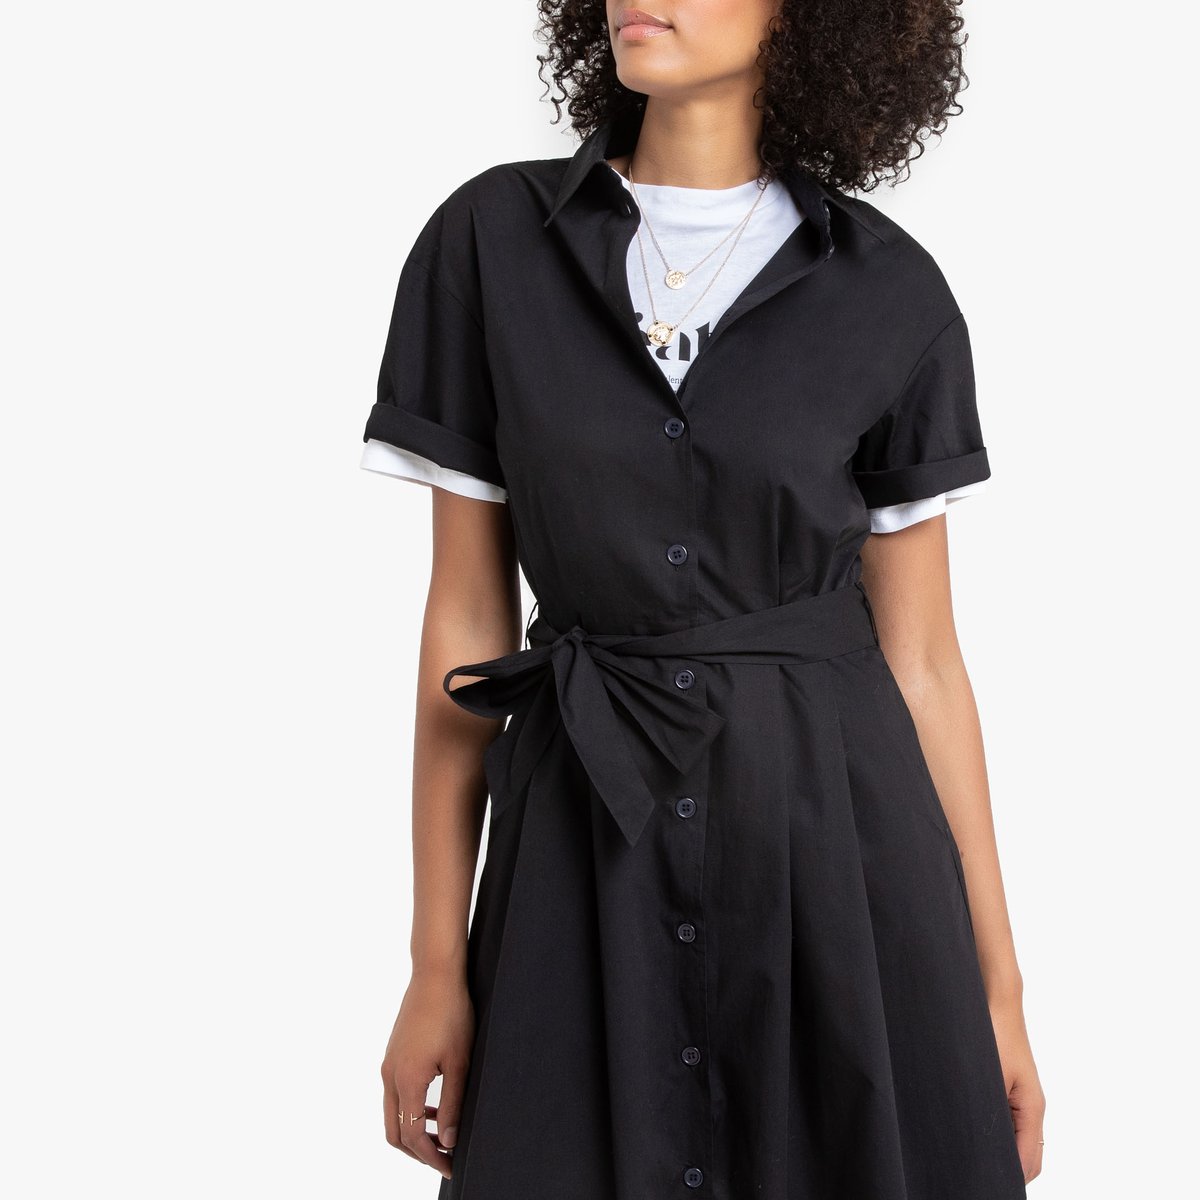 Платье-рубашка La Redoute Из хлопка 34 (FR) - 40 (RUS) черный, размер 34 (FR) - 40 (RUS) Из хлопка 34 (FR) - 40 (RUS) черный - фото 2